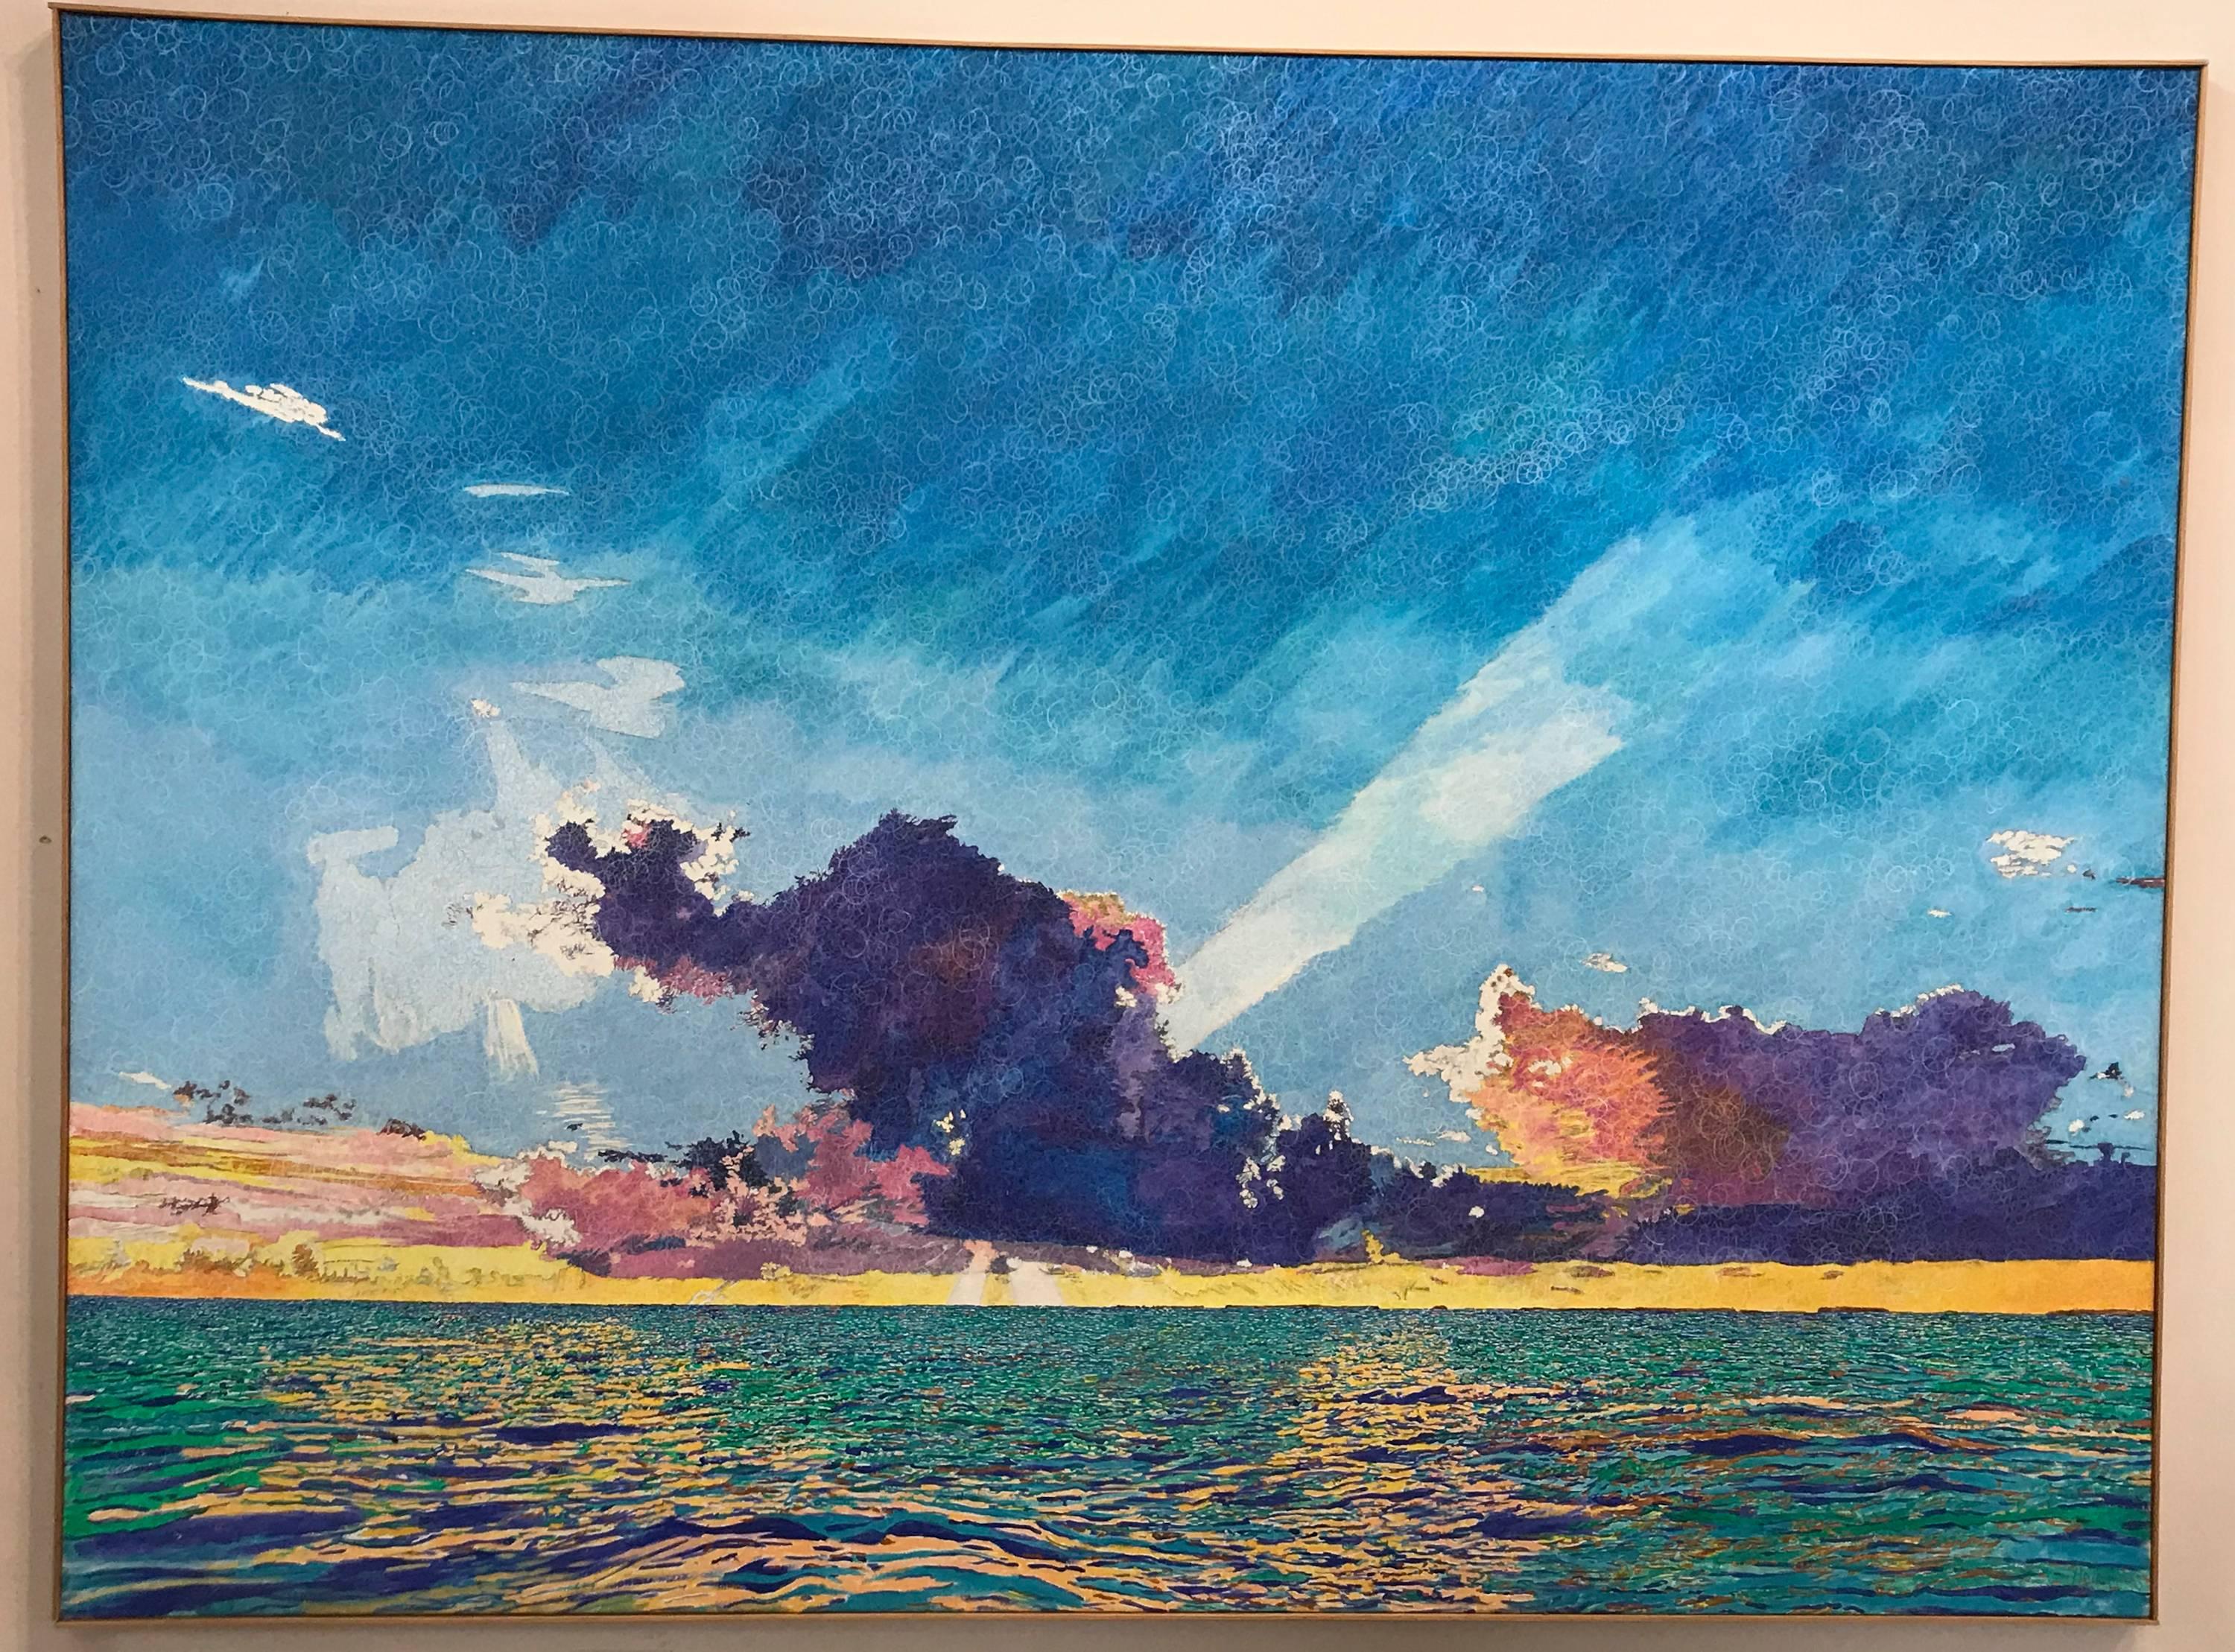 Sunset Sea Clouds, Key Largo, blau, rosa, grün, strukturiertes Gemälde, Licht, groß